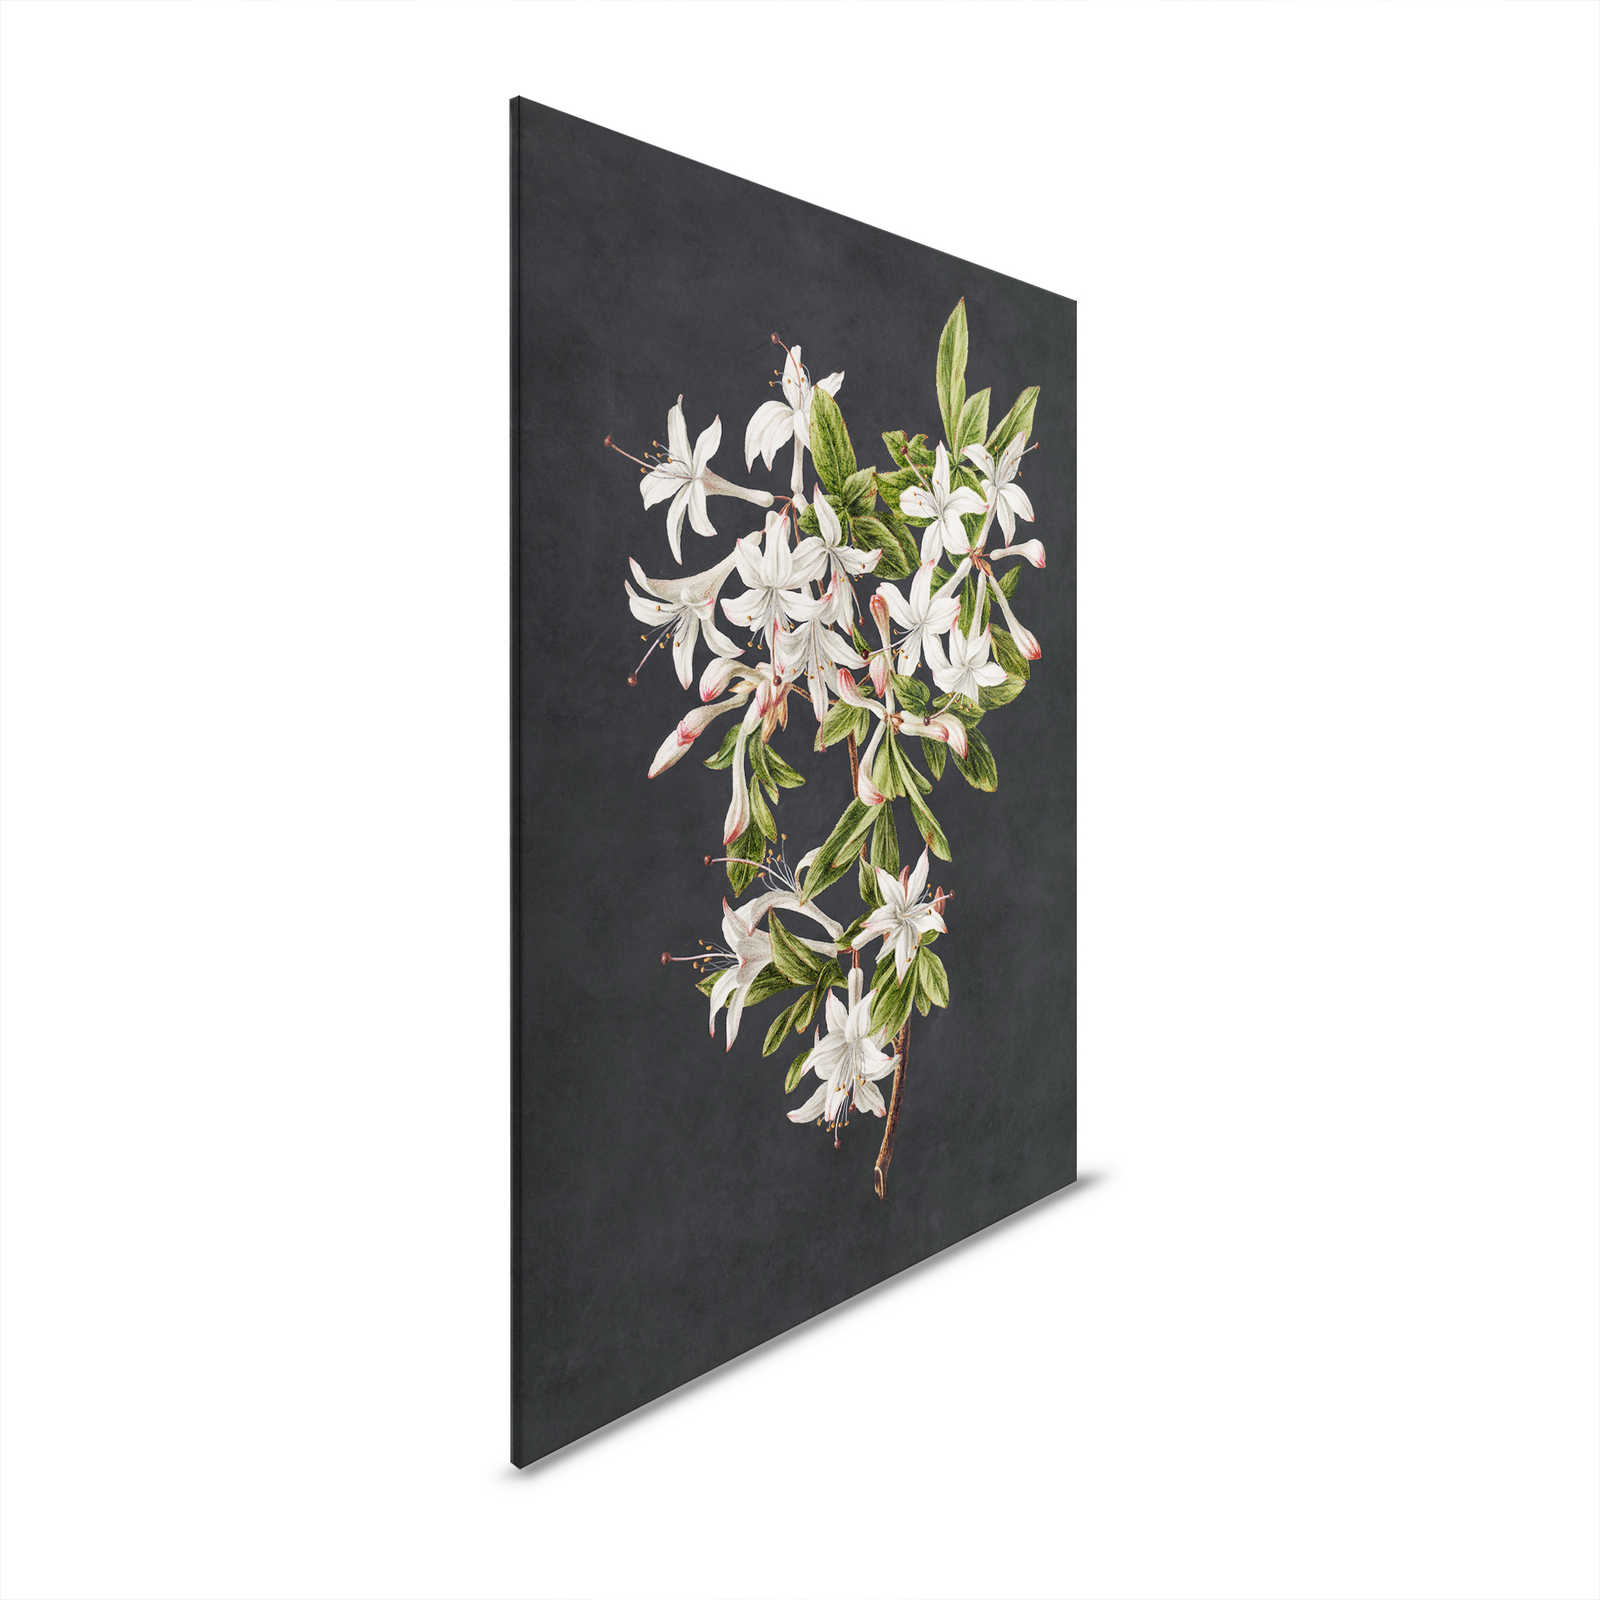 Giardino di mezzanotte 2 - Quadro su tela nera Ramo di fiori bianchi - 0,80 m x 1,20 m
